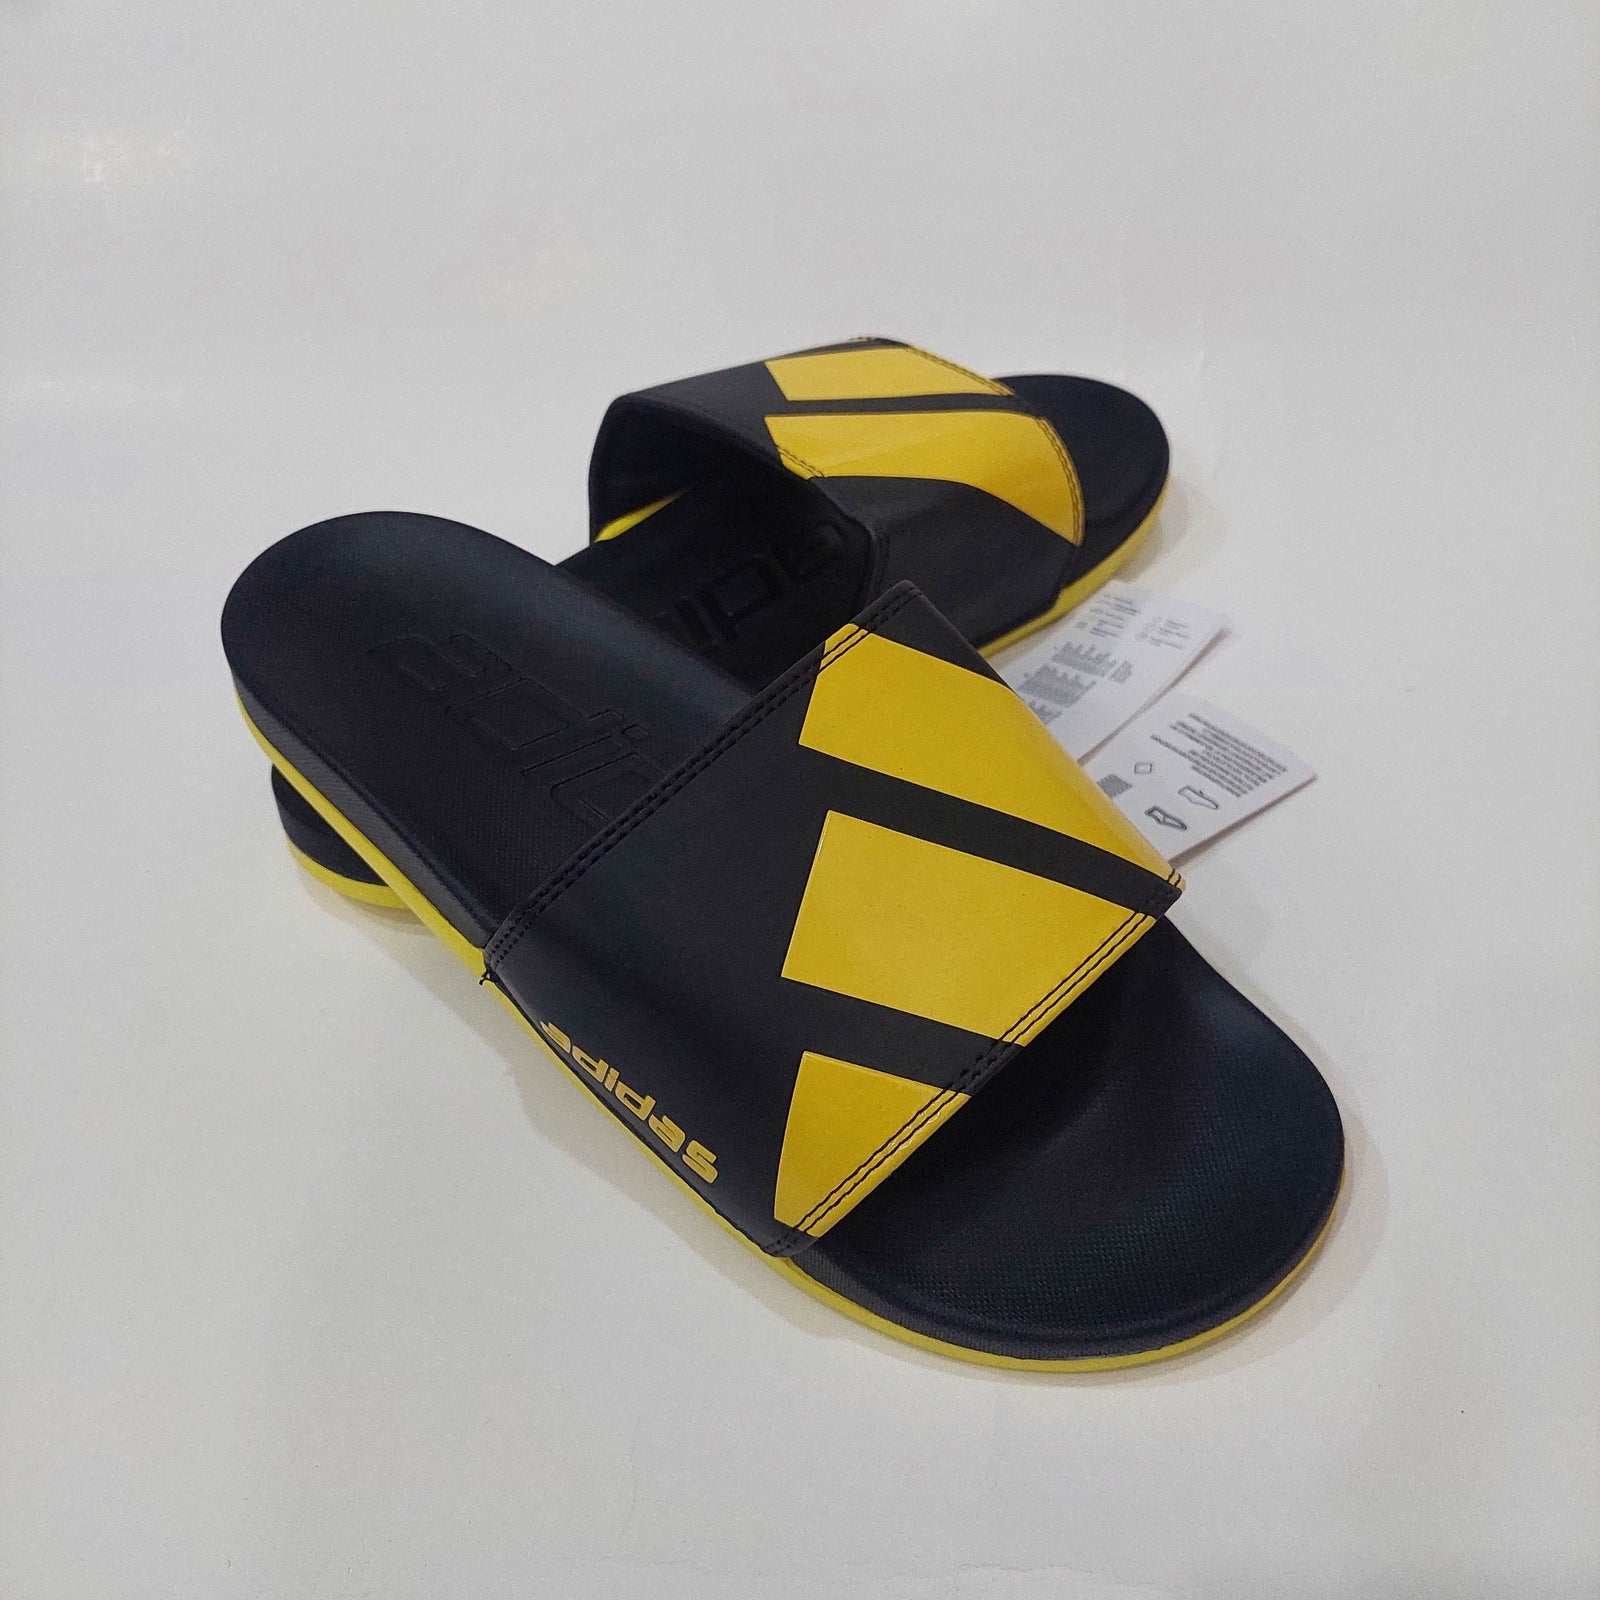 AD Adlite Slides Trefoil - Black/Yellow